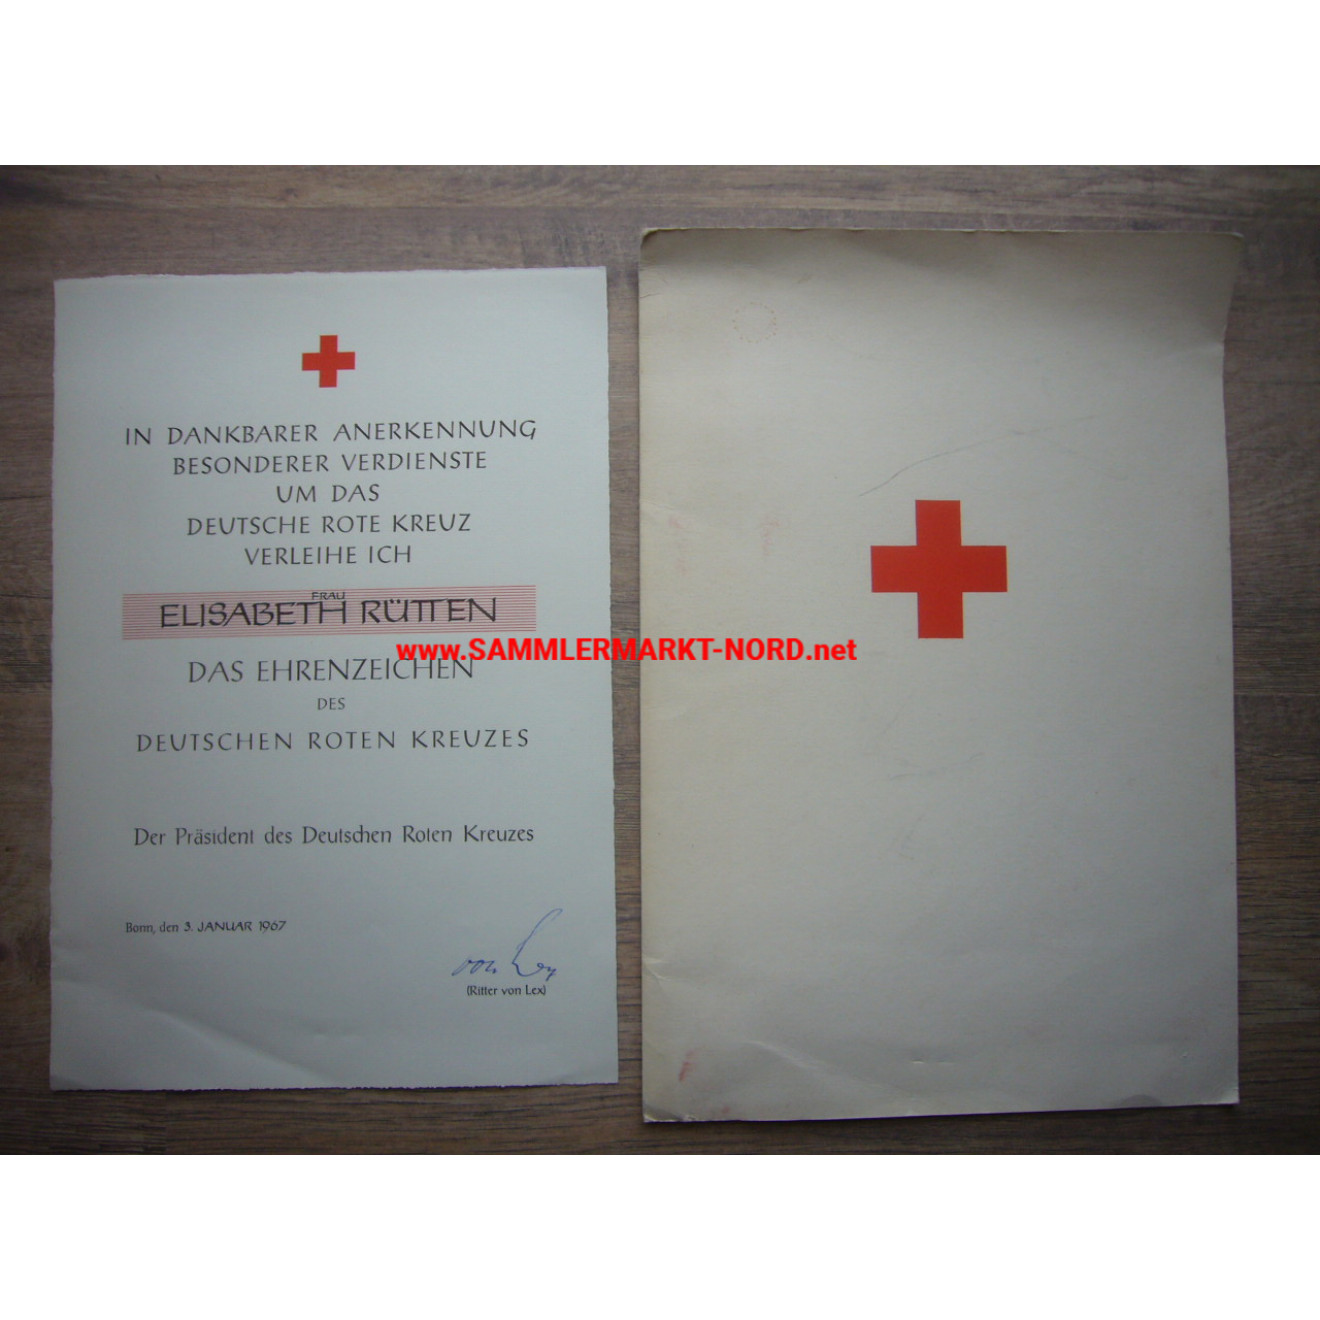 DRK Rotes Kreuz - Urkunde zum Ehrenzeichen - Hans Ritter von Lex - Autograph